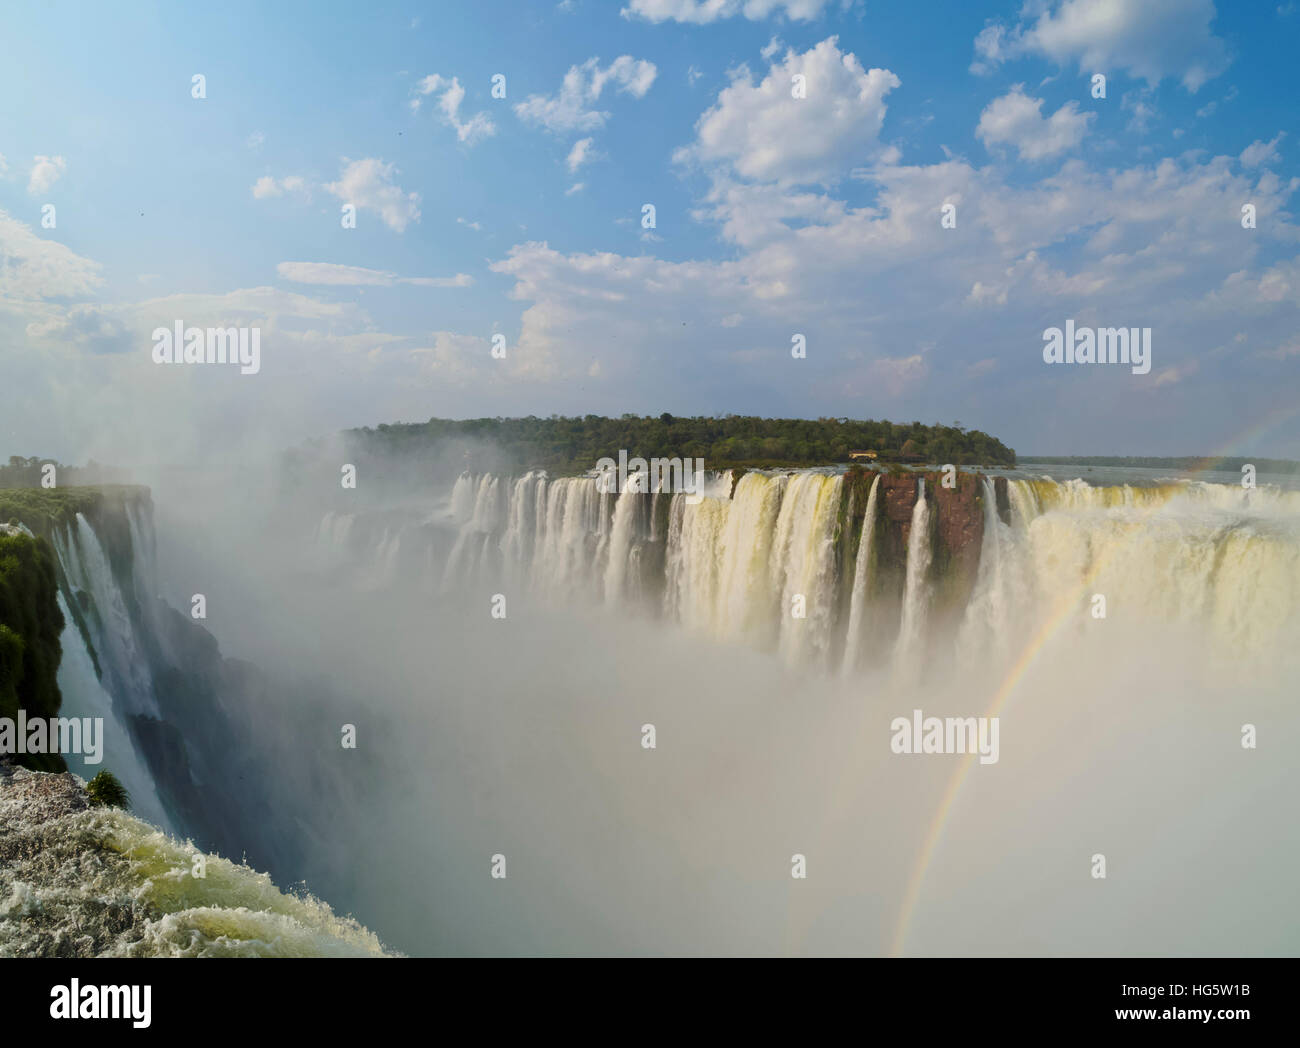 Argentina, Misiones, Puerto Iguazu, Iguazu Falls, View of the Garganta del Diablo. Stock Photo